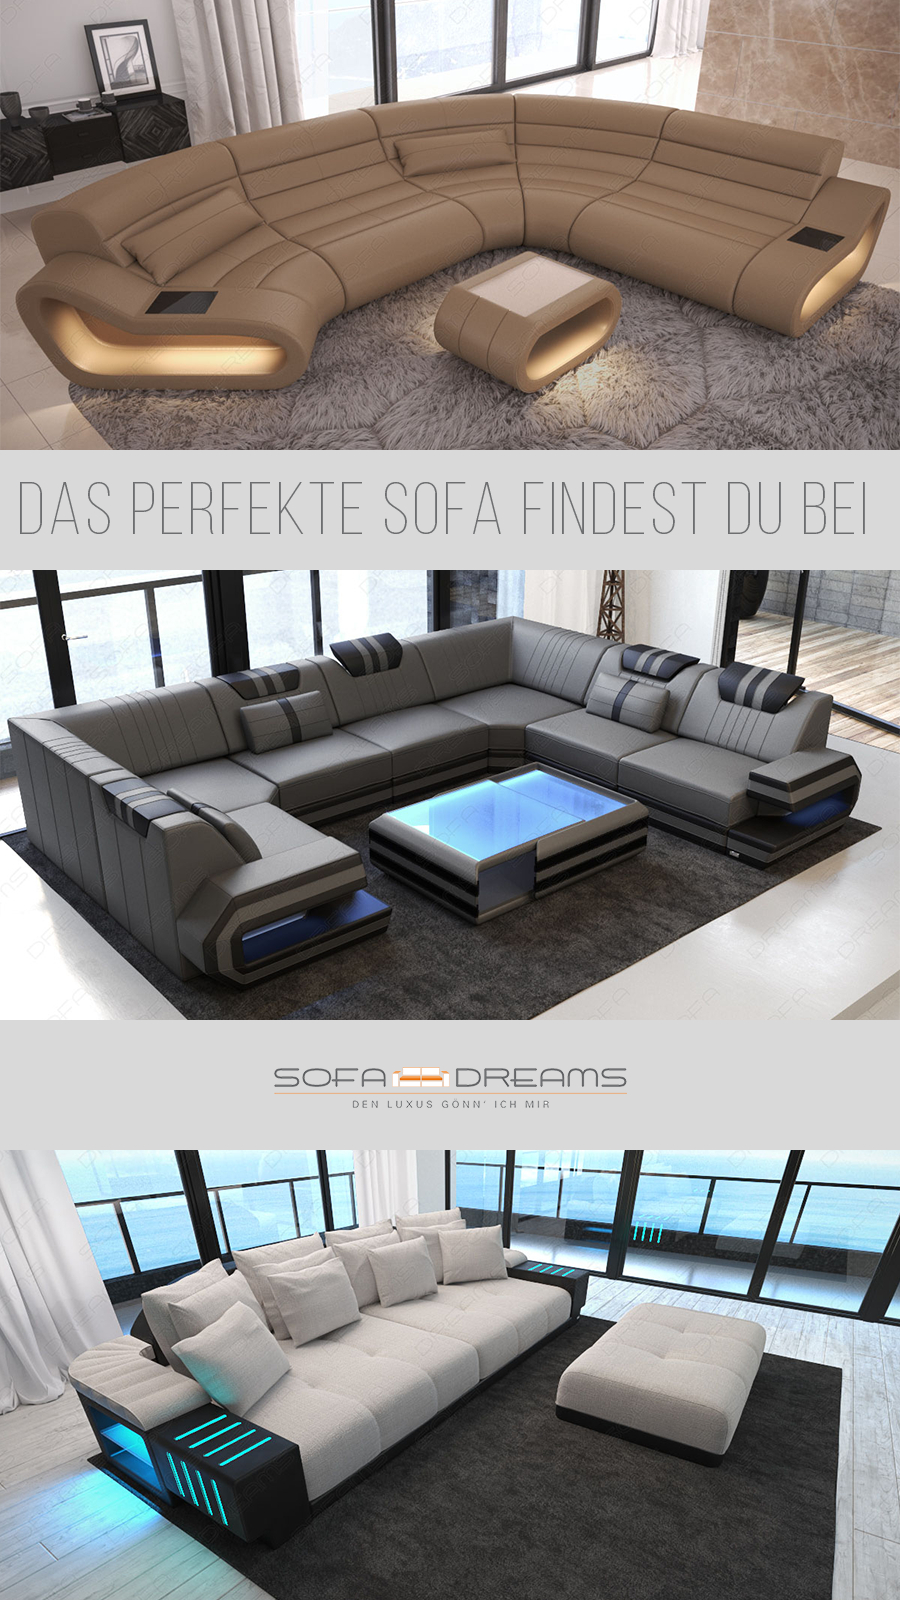 Das Perfekte Sofa Im Modernen Stil Für Dein Wohnzimmer Findest Du intended for Wohnzimmer Couch